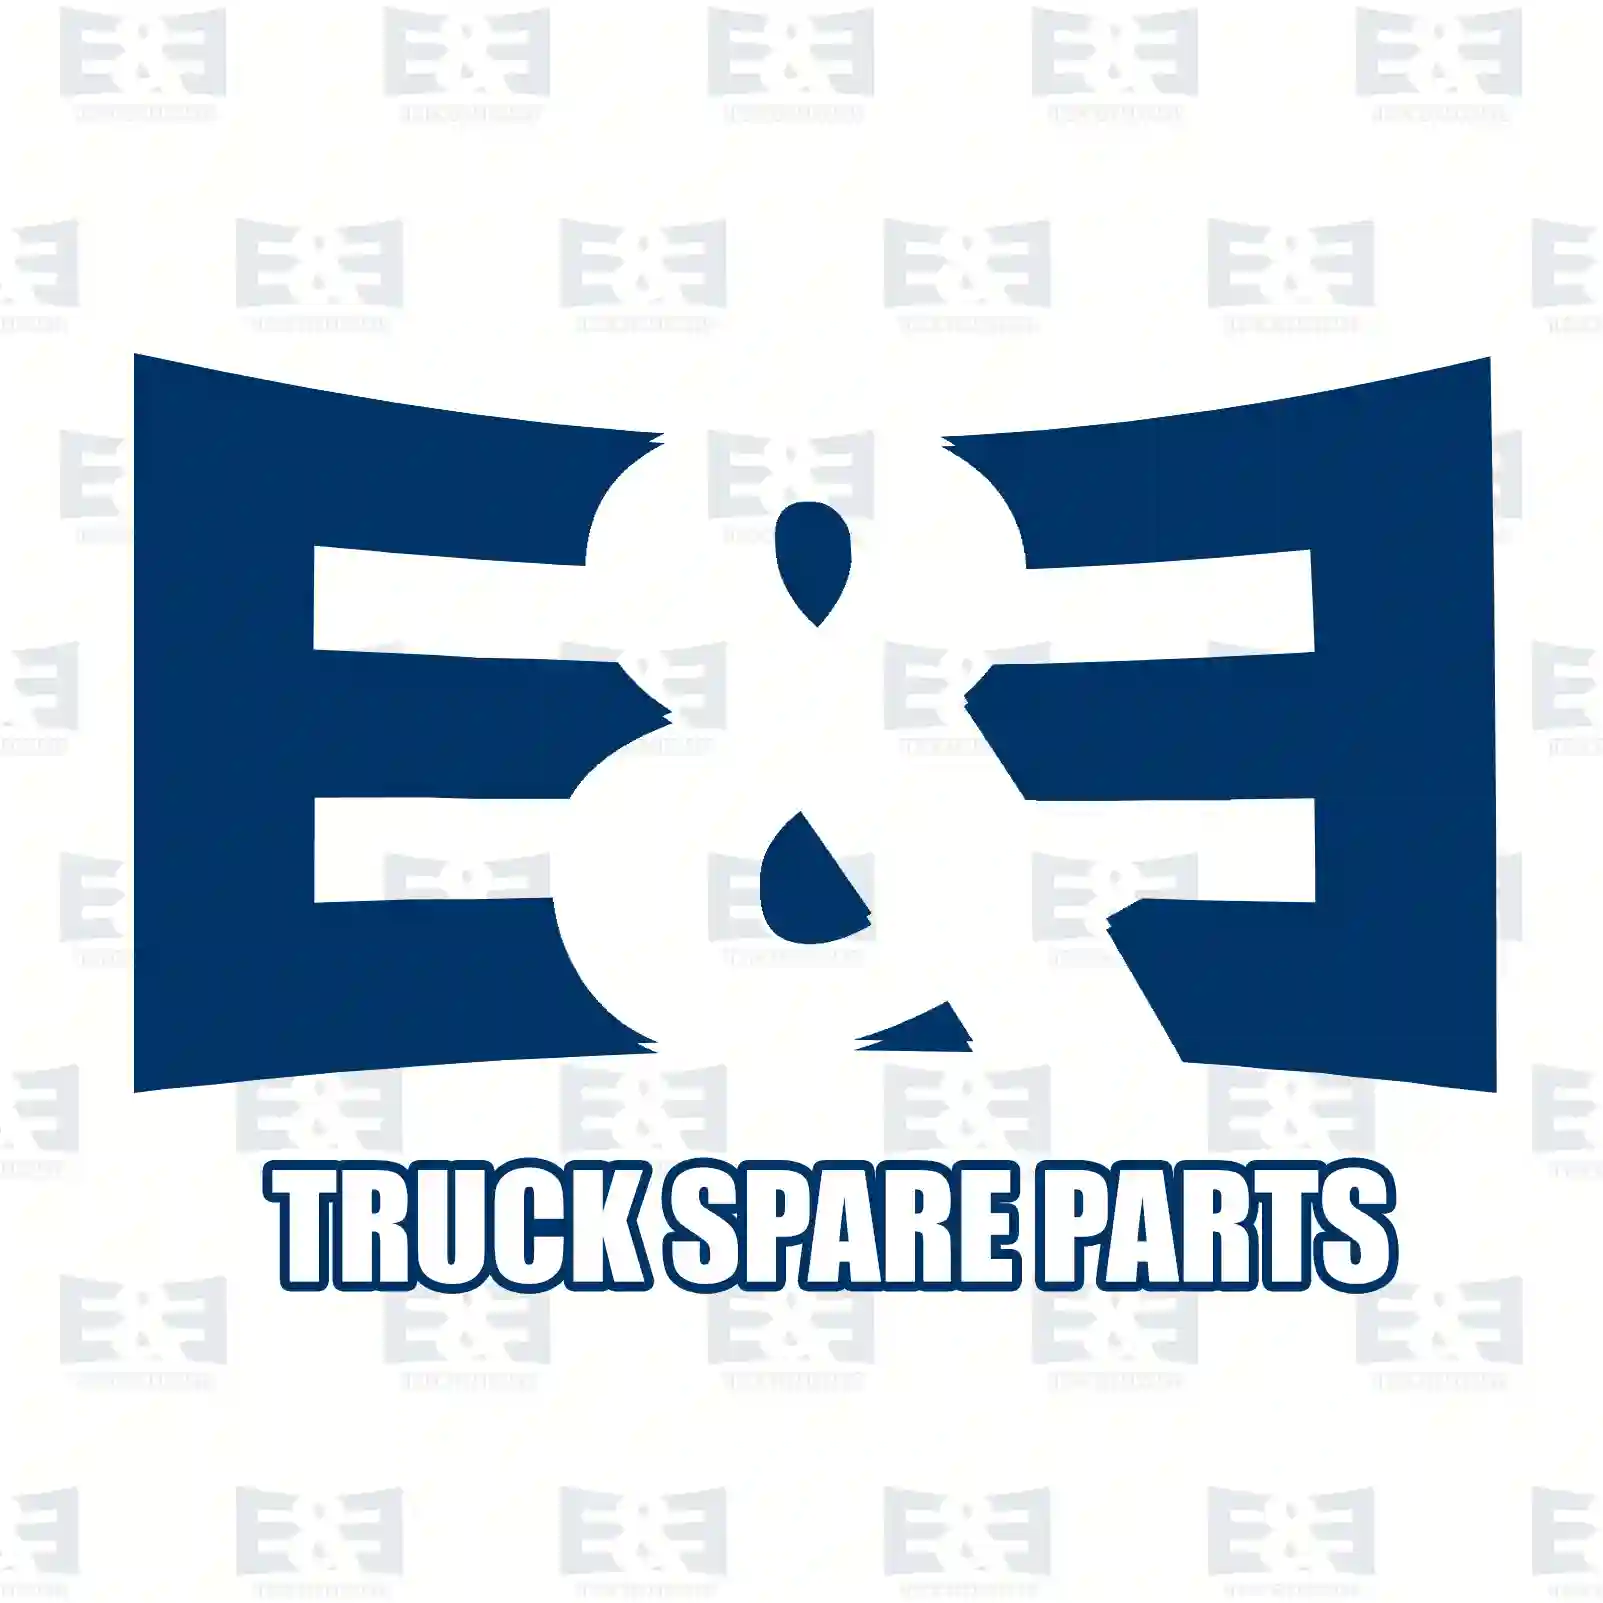 Shock absorber, 2E2283160, 6283260000, 6283260700, , , ||  2E2283160 E&E Truck Spare Parts | Truck Spare Parts, Auotomotive Spare Parts Shock absorber, 2E2283160, 6283260000, 6283260700, , , ||  2E2283160 E&E Truck Spare Parts | Truck Spare Parts, Auotomotive Spare Parts